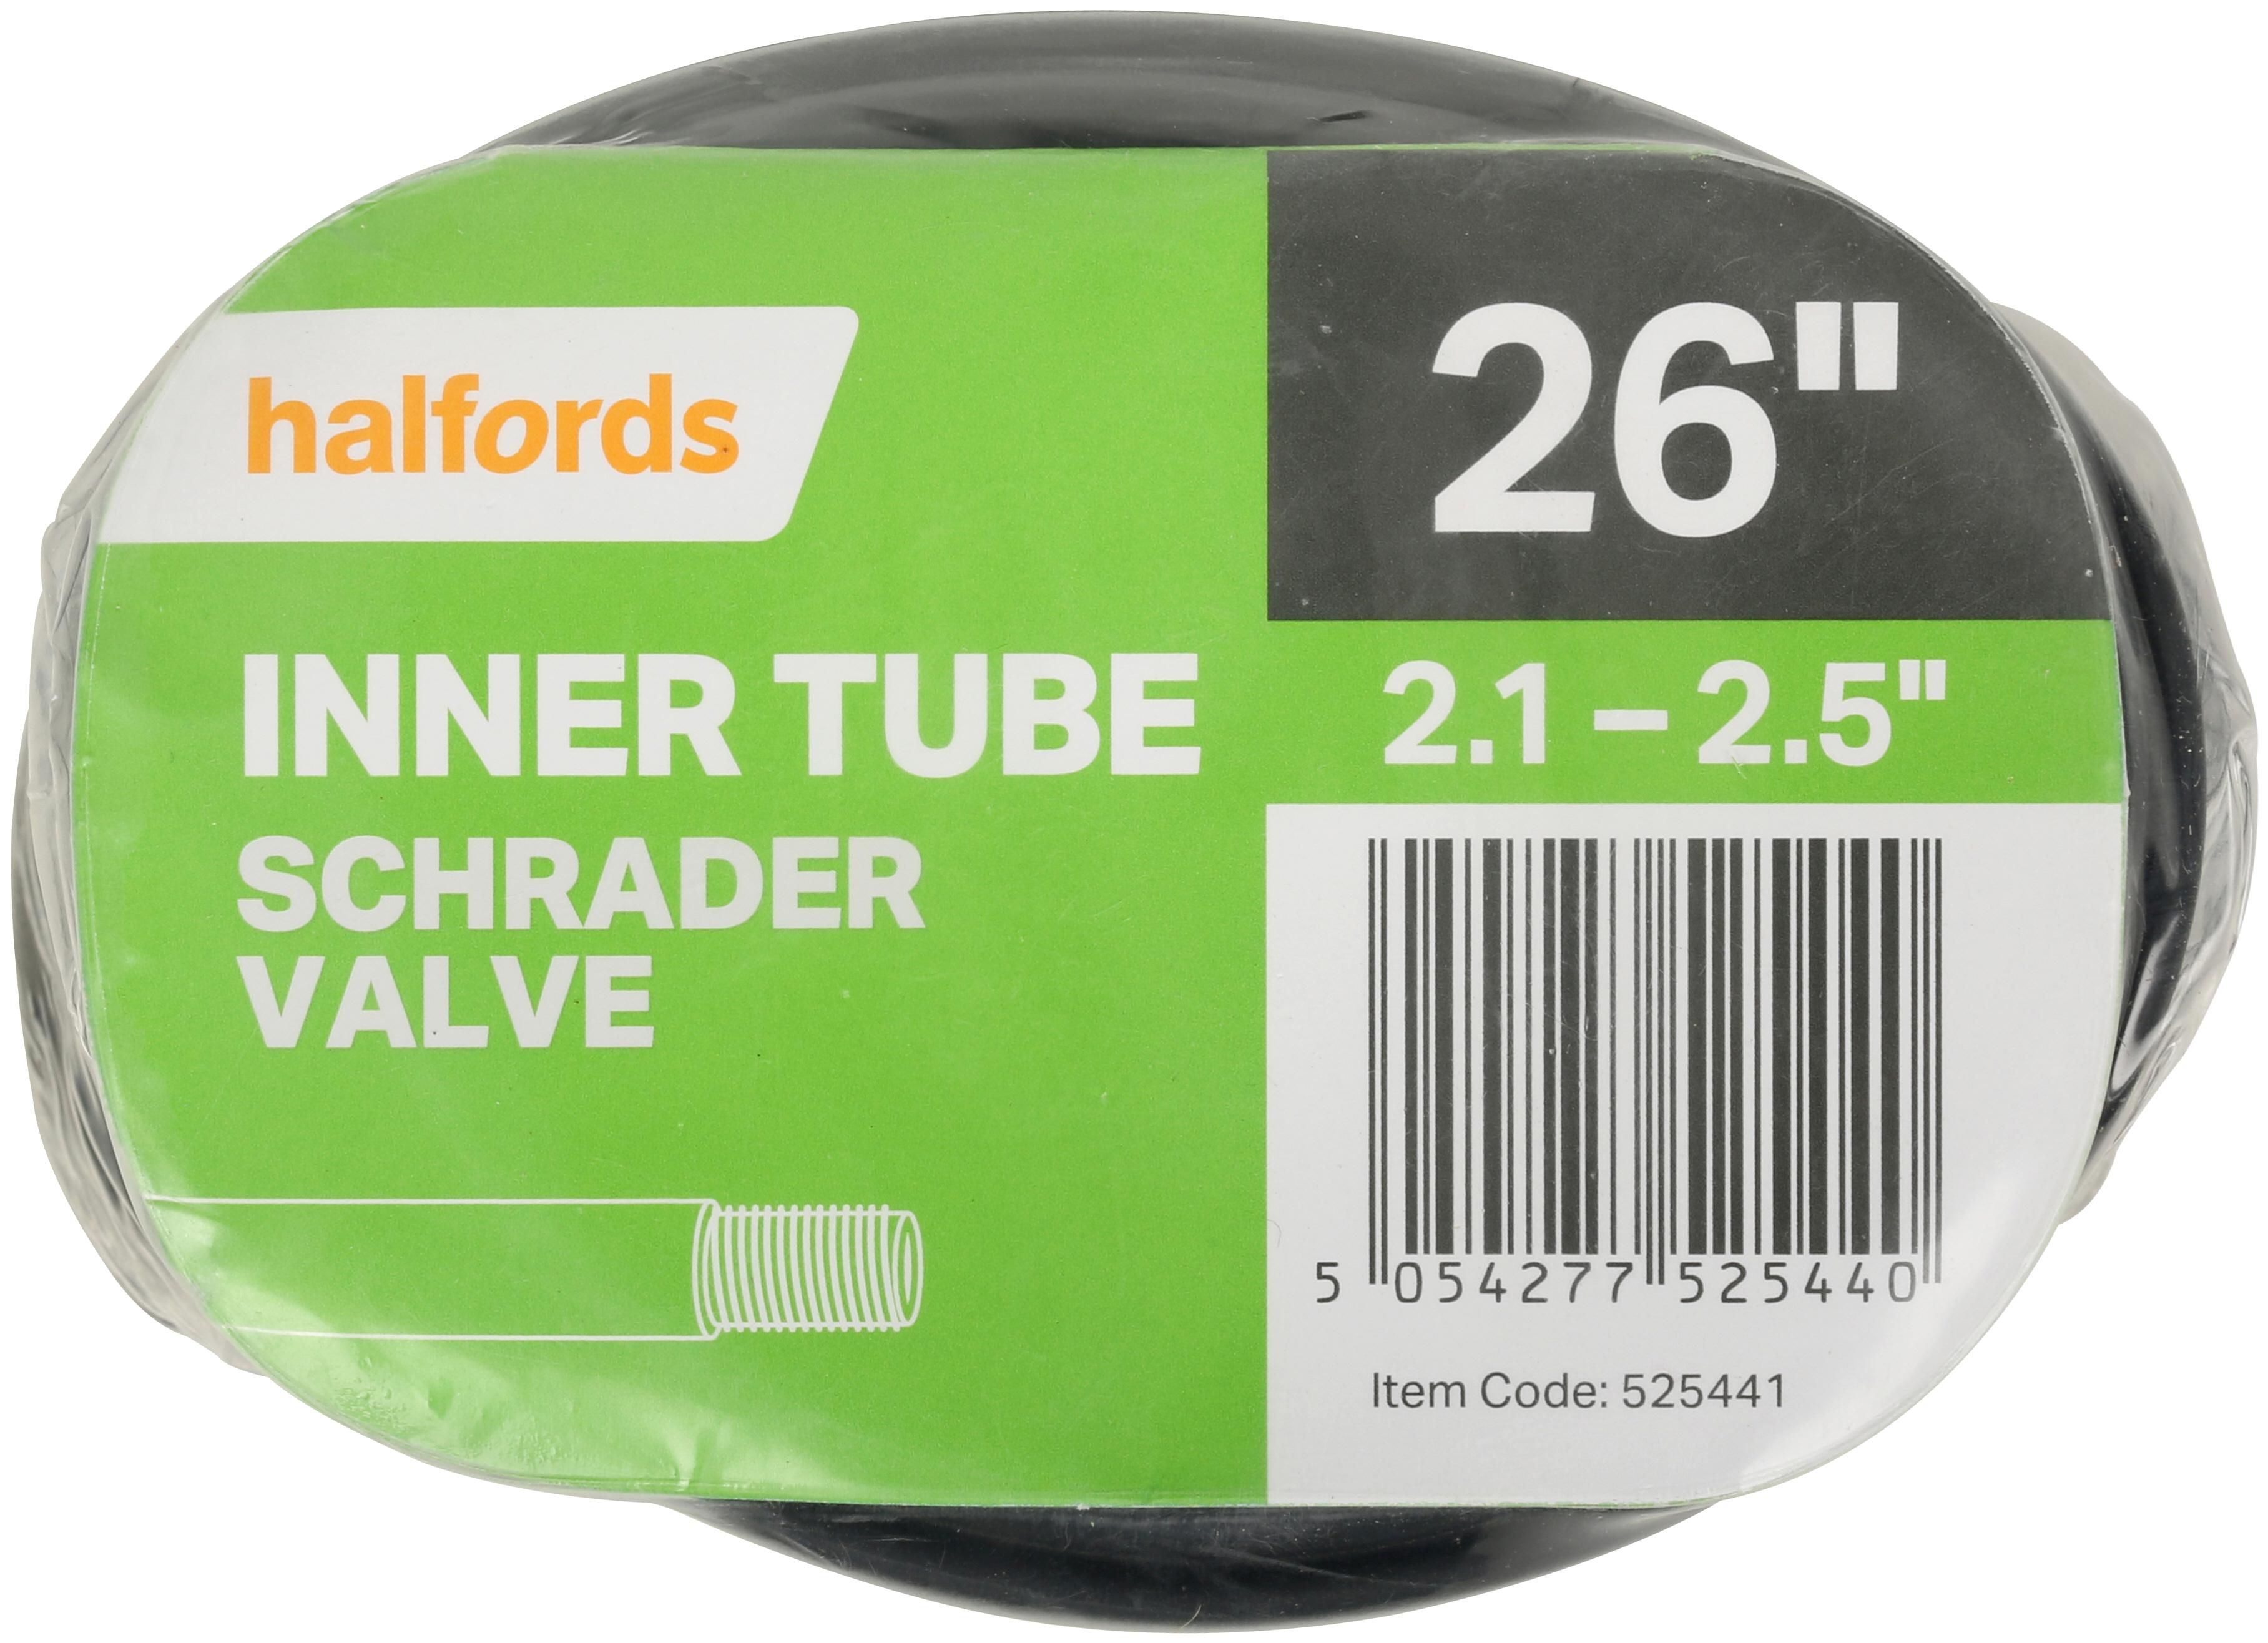 Halfords Bike Inner Tube, 26 Inch X 2.1 - 2.5 Inch, Schrader